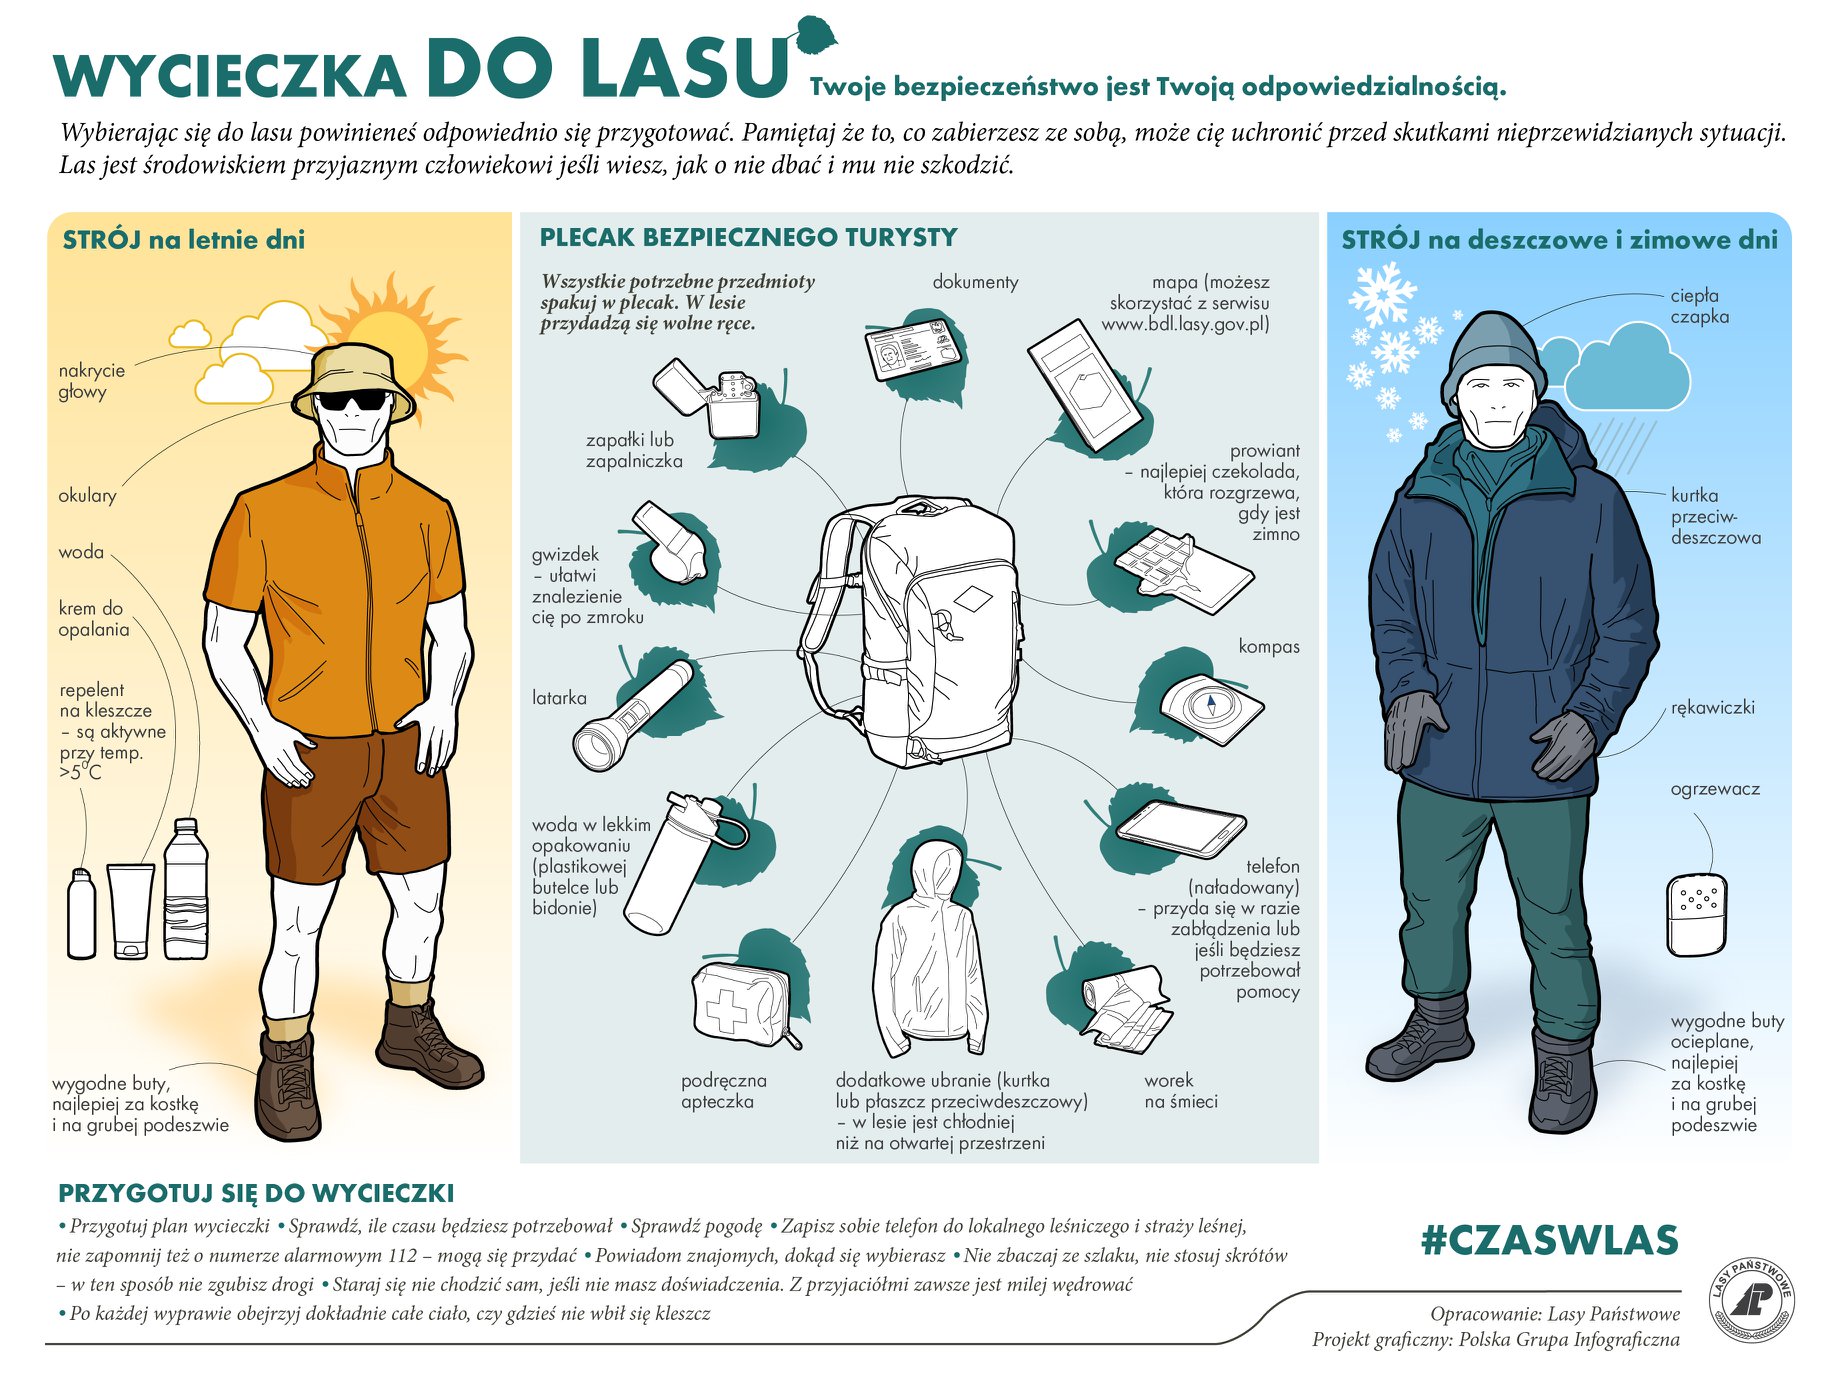 Infografika przedstawia instrukcję prawidłowego przygotowania przed wycieczką do lasu w zależności od warunków atmosferycznych